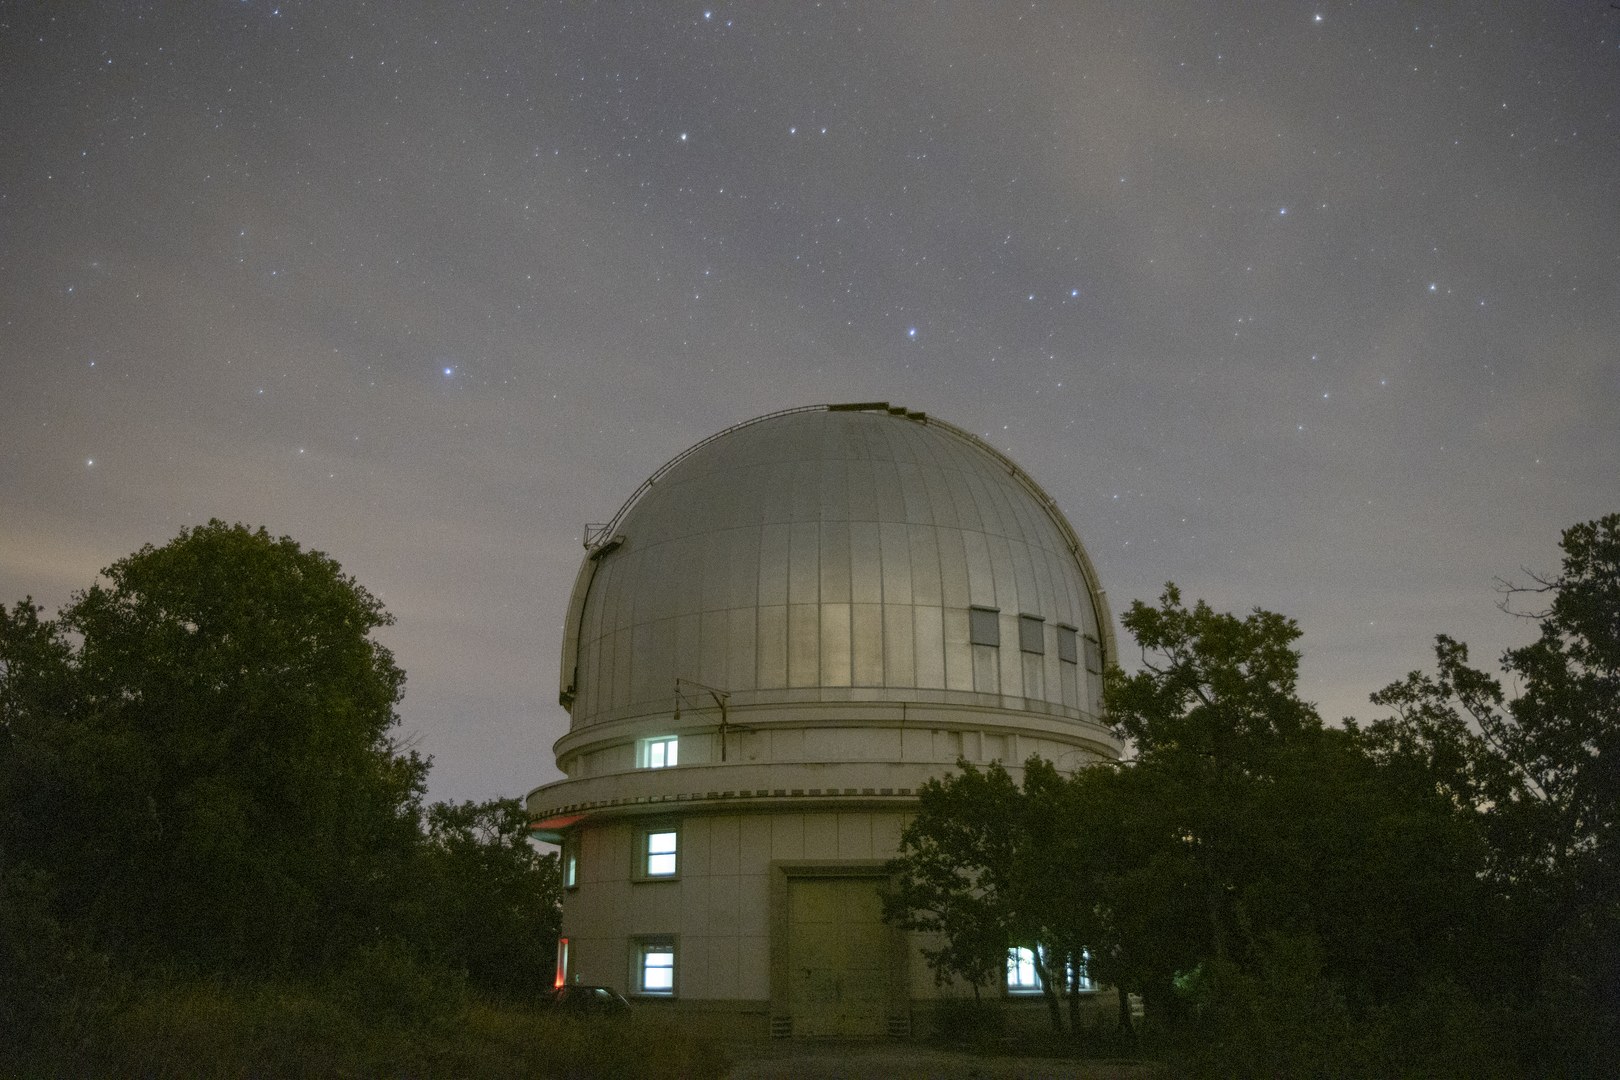 صورة لمبنى مرصد "أوت پروڤينس" في فرنسا مُلتَقَطة في ليلةٍ سديميّة مع ظهور النجوم الأكثر سطوعاً فوق قمة المرصد.